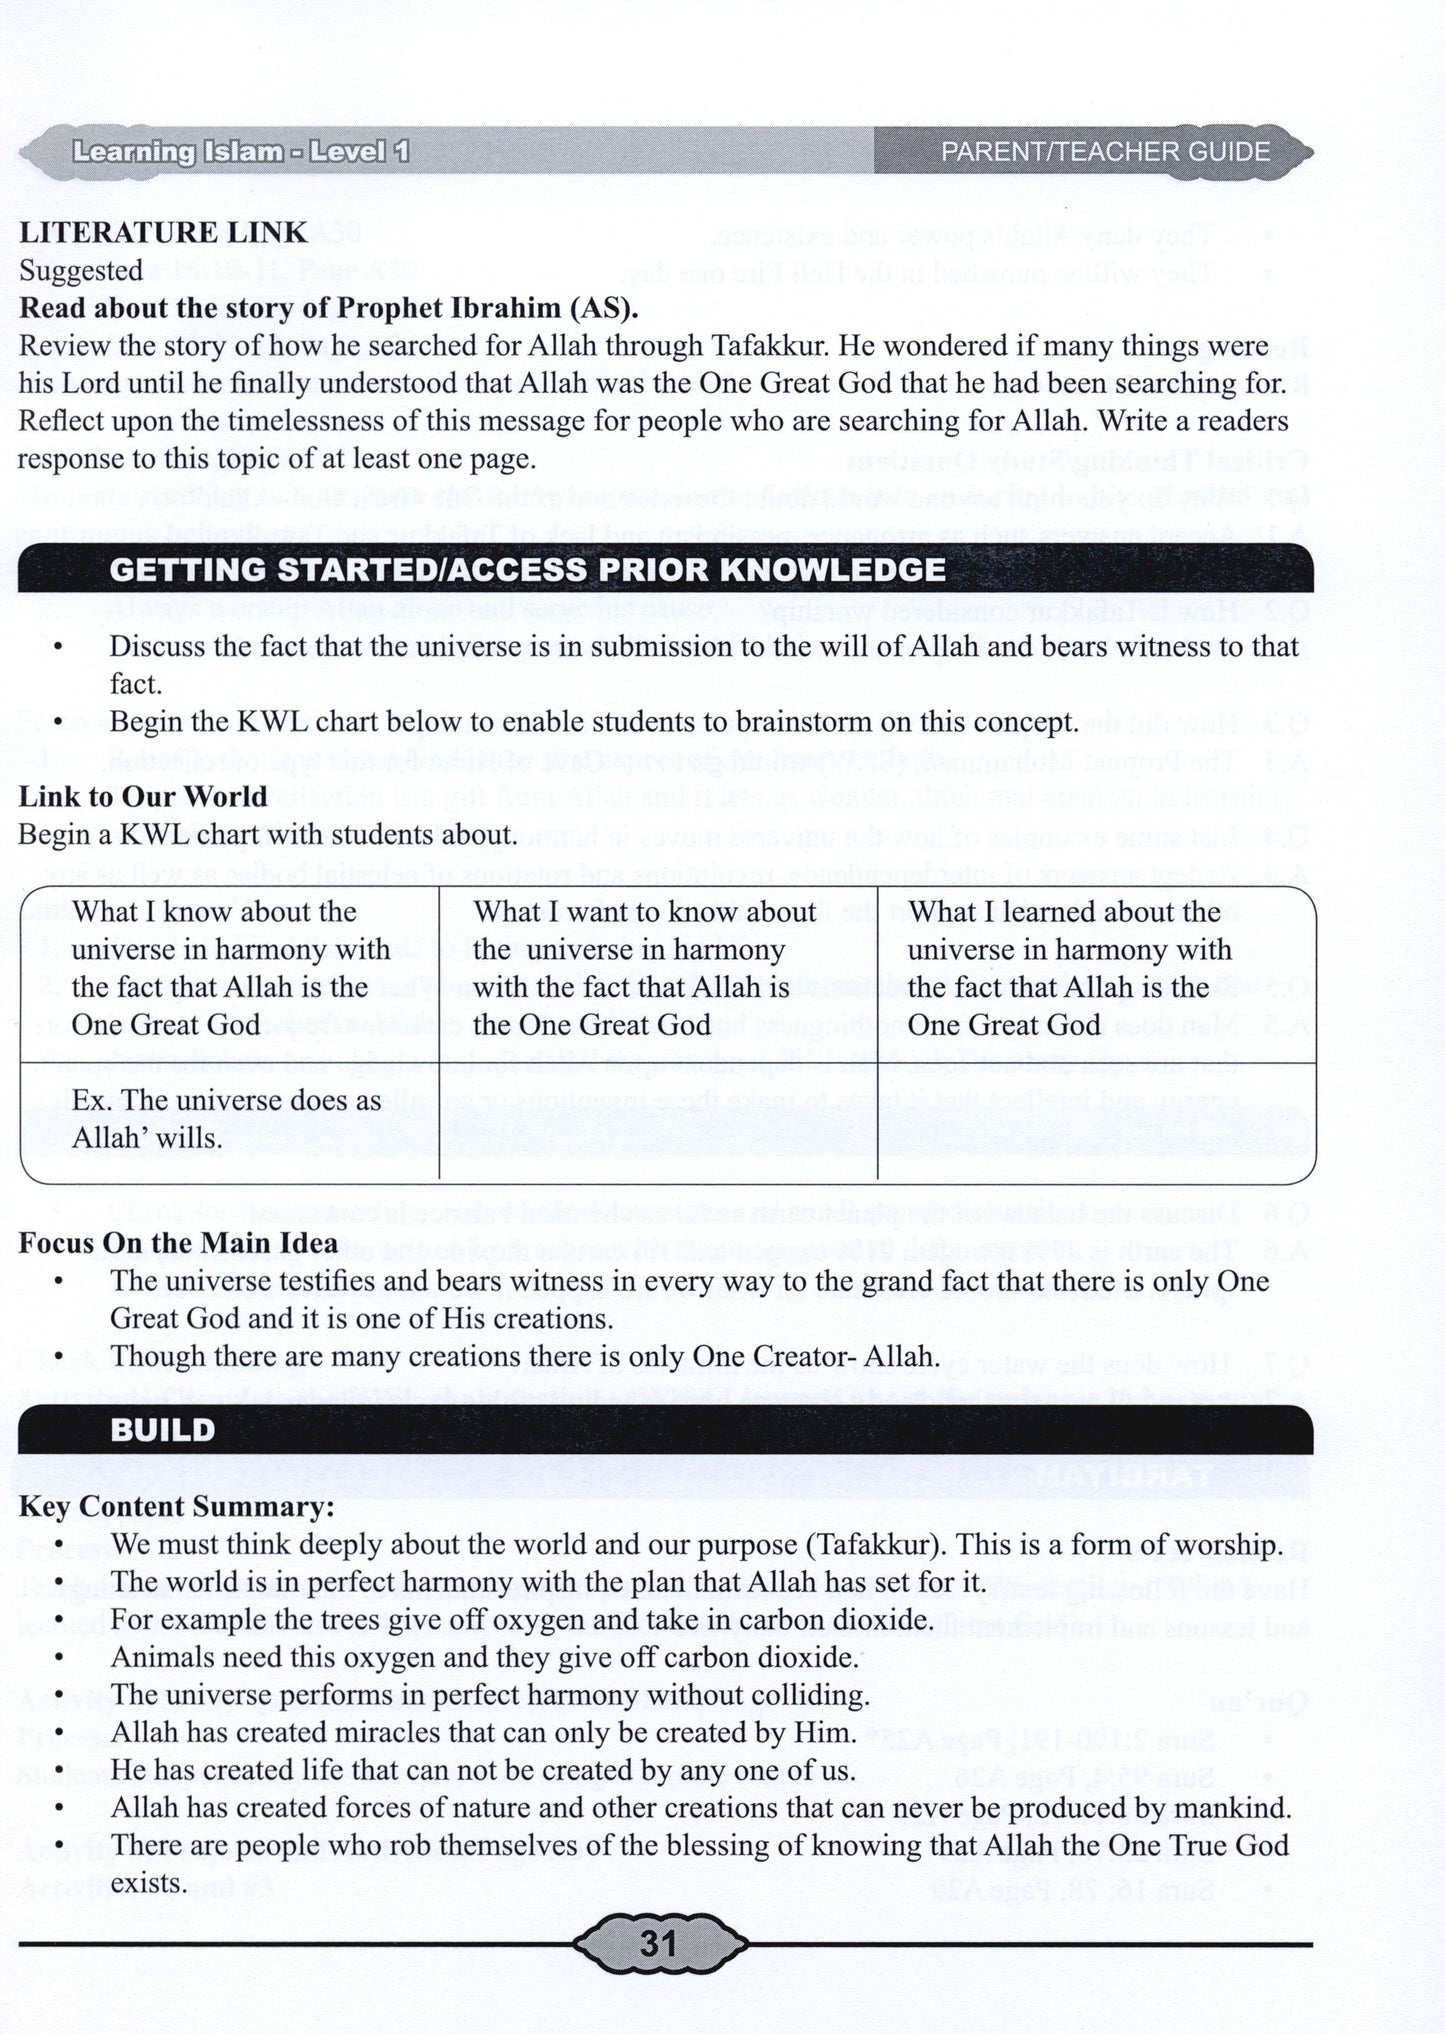 Learning Islam Parent/Teacher Guide Level 1 (Grade 6)